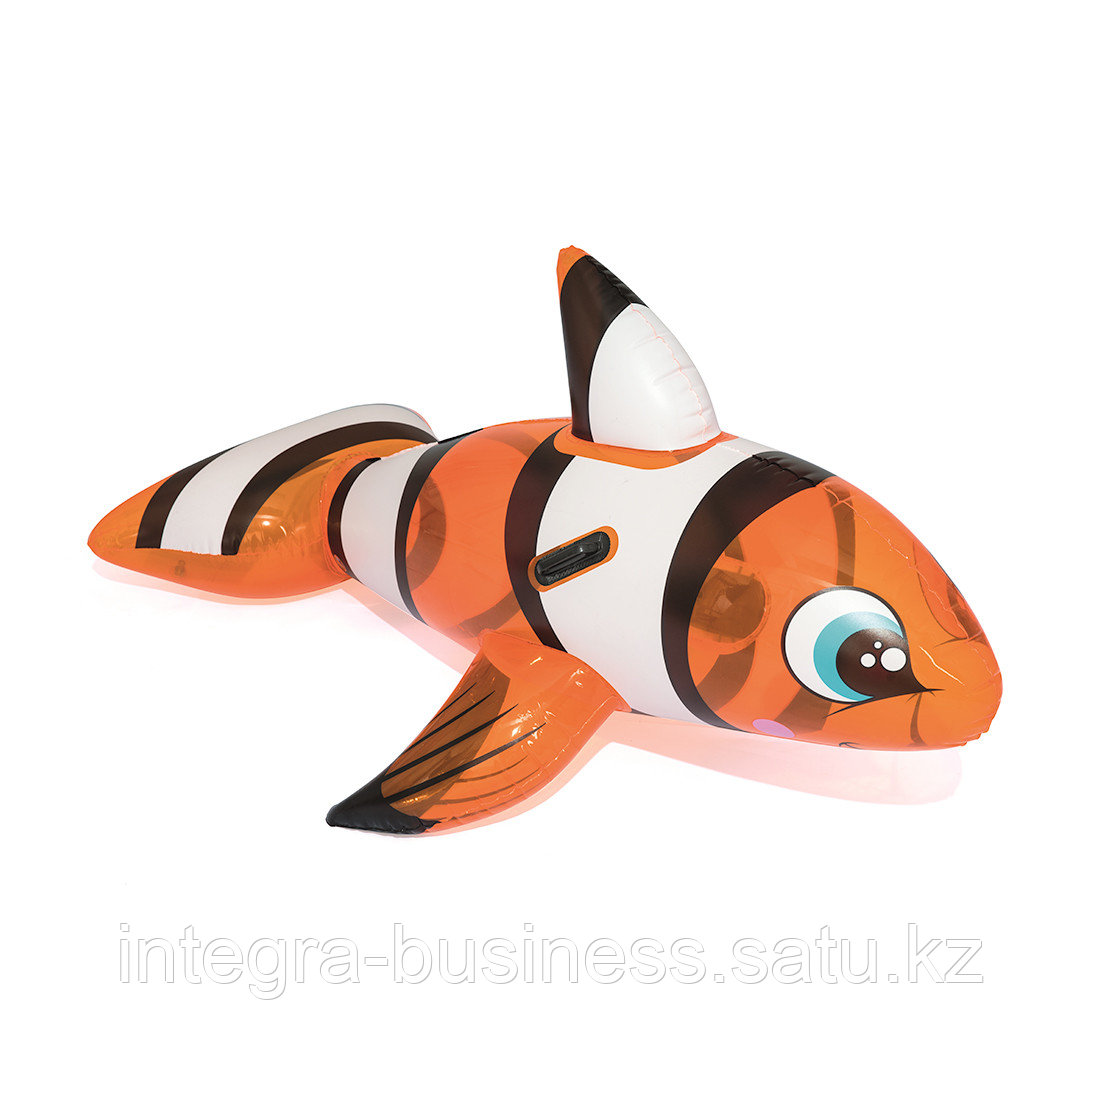 Надувная игрушка Bestway 41088 в форме рыбы для плавания, фото 1